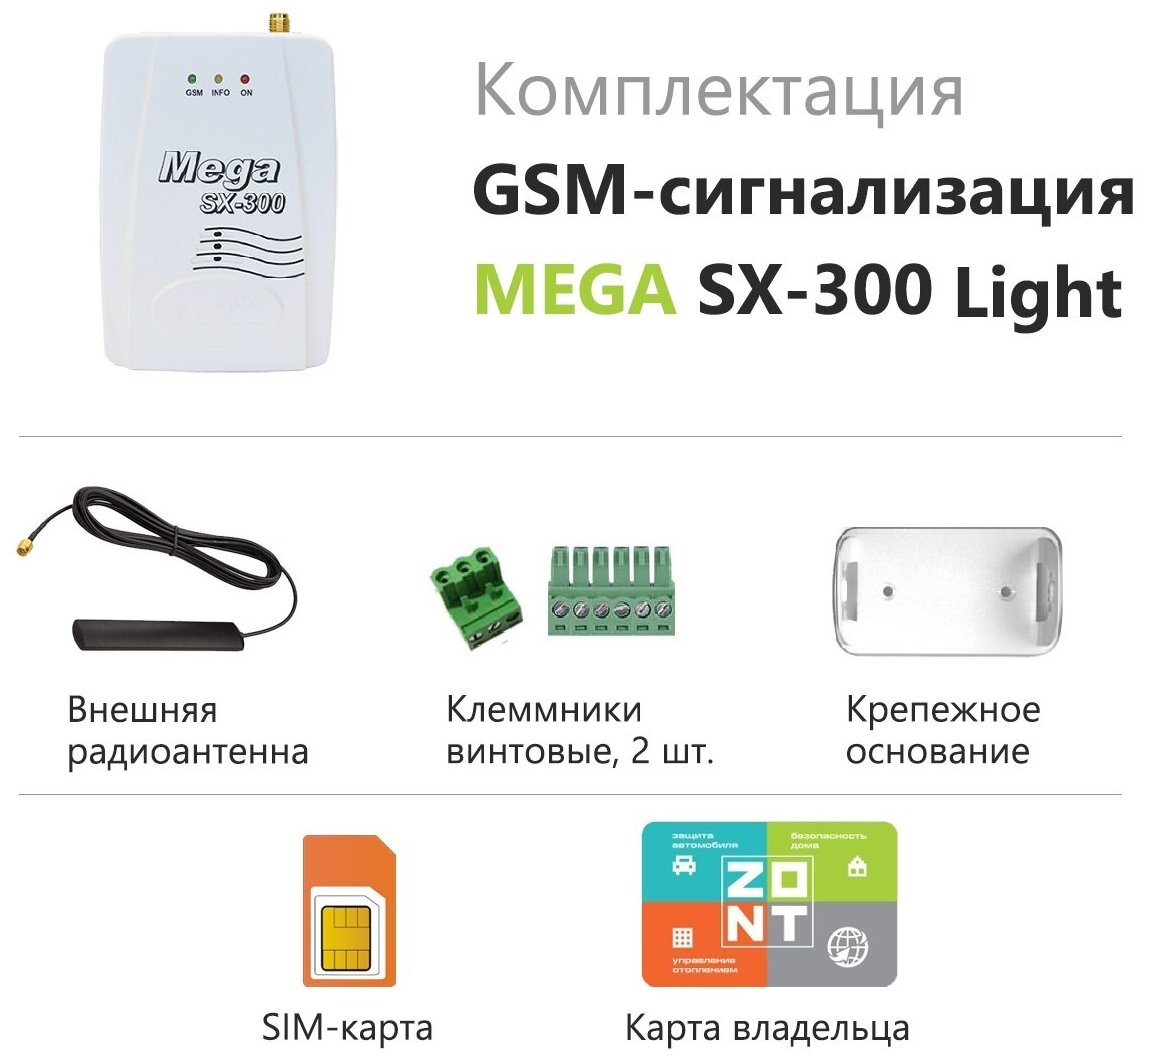 Блок управления (контроллер) для GSM сигнализации Mega SX-300 Light